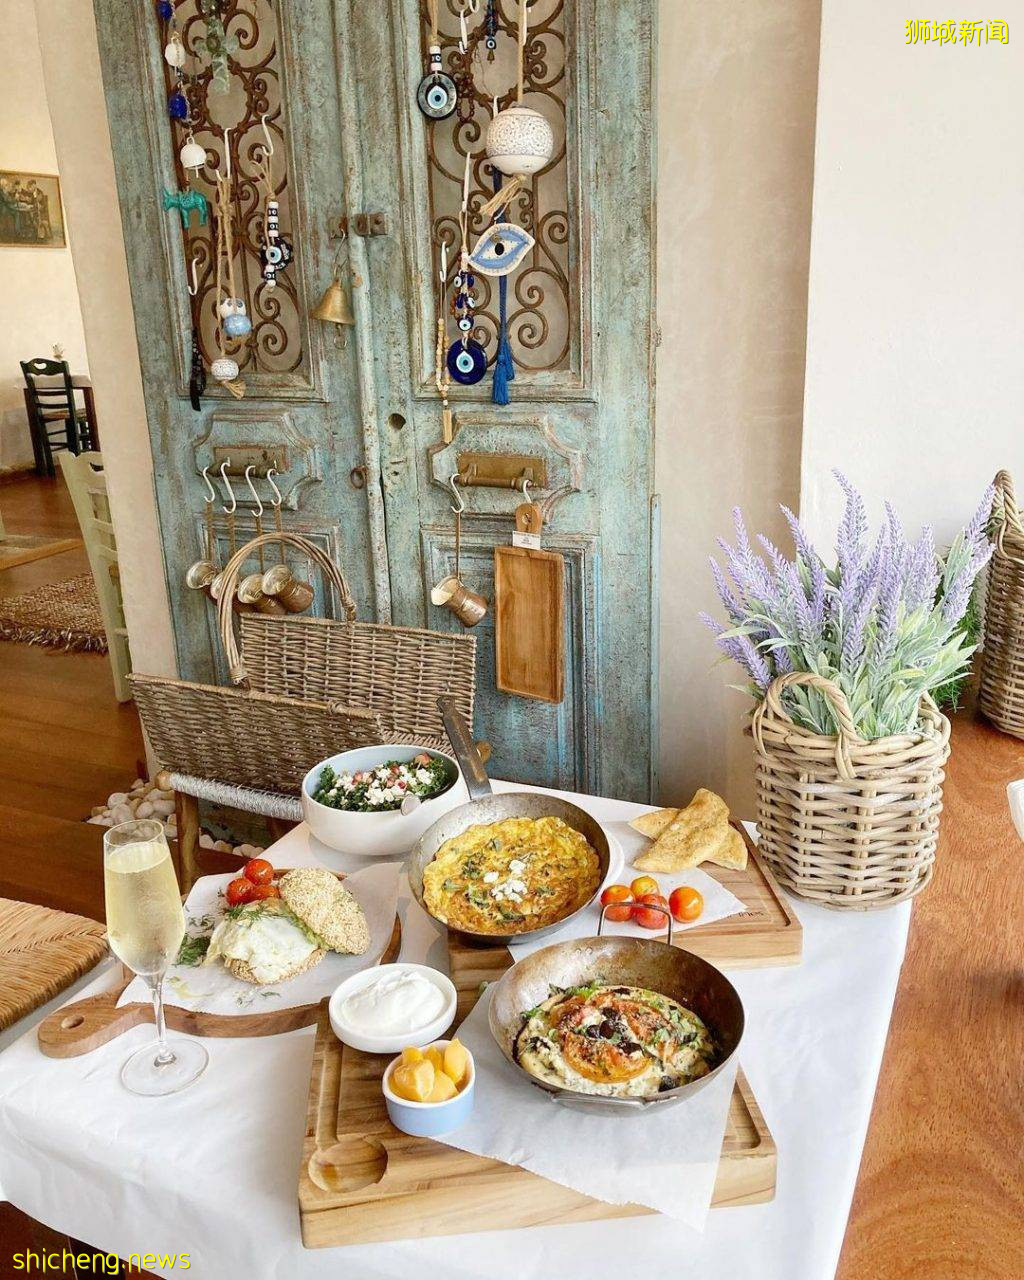 一秒穿越到希腊🇬🇷地中海风情餐厅Blu Kouzina🍲地道正宗美食、蓝白小镇风格，开启悠闲度假心情